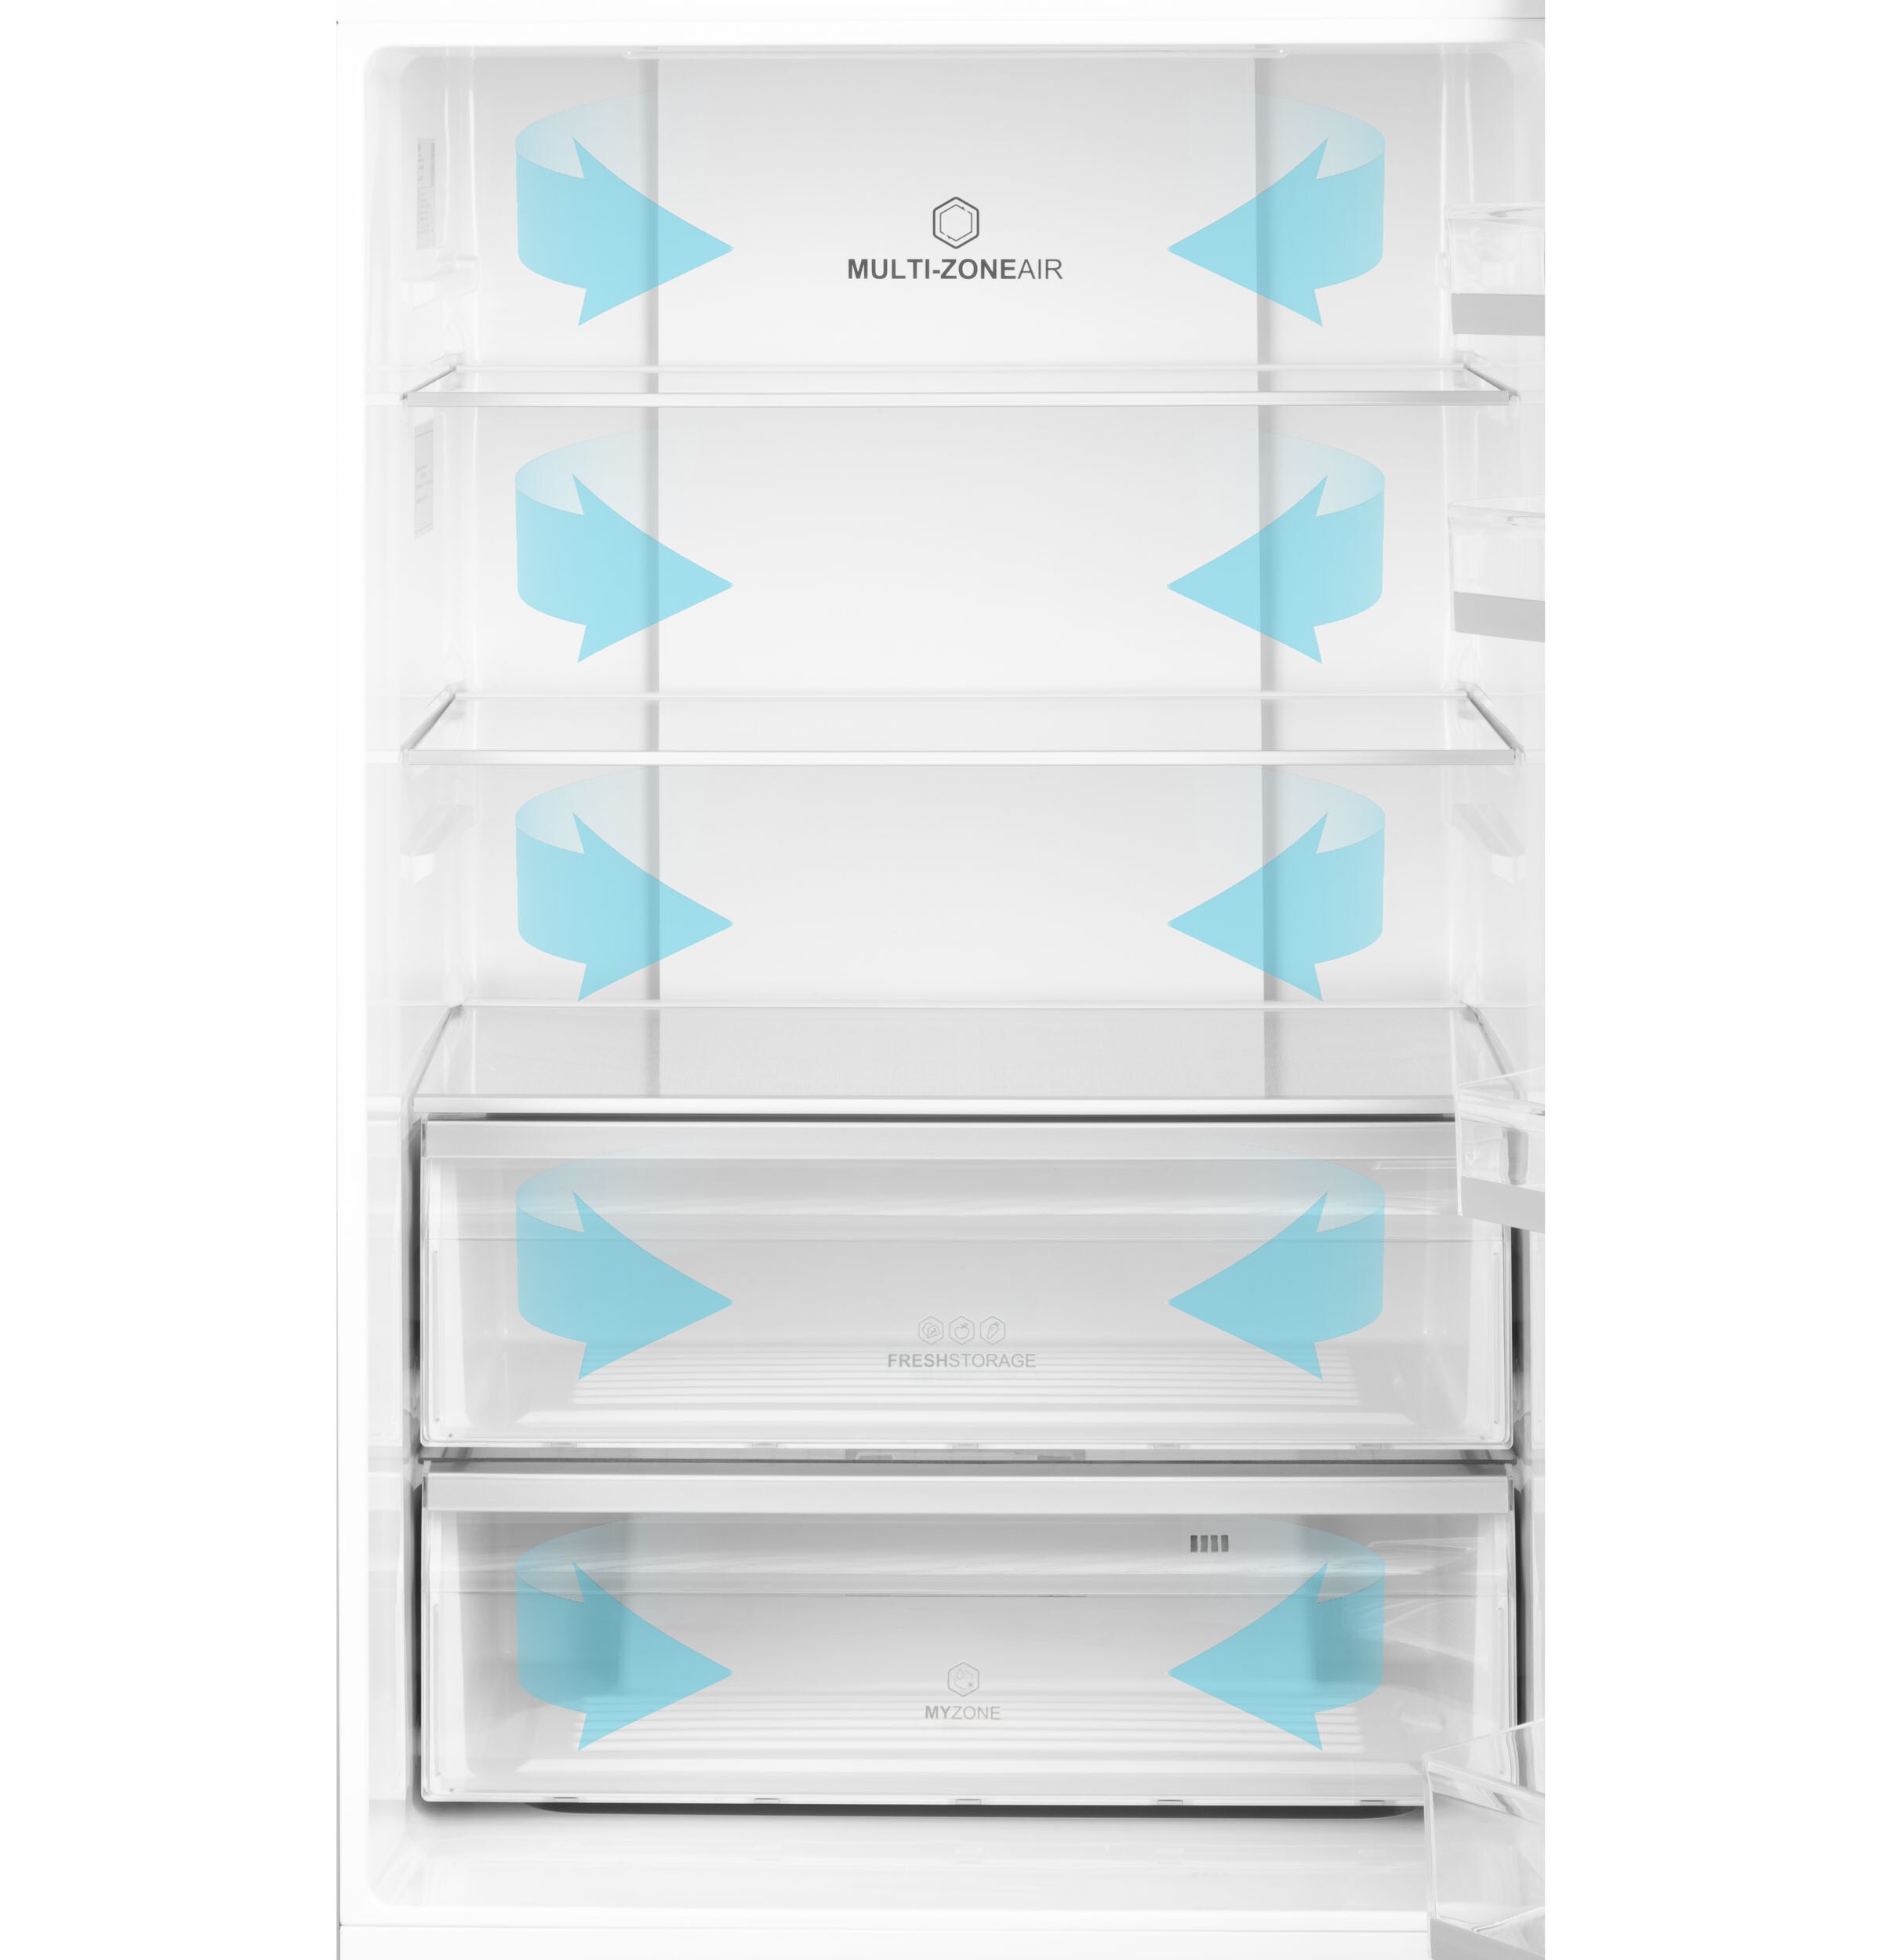 Haier Bottom-Freezer Refrigerators at Lowes.com